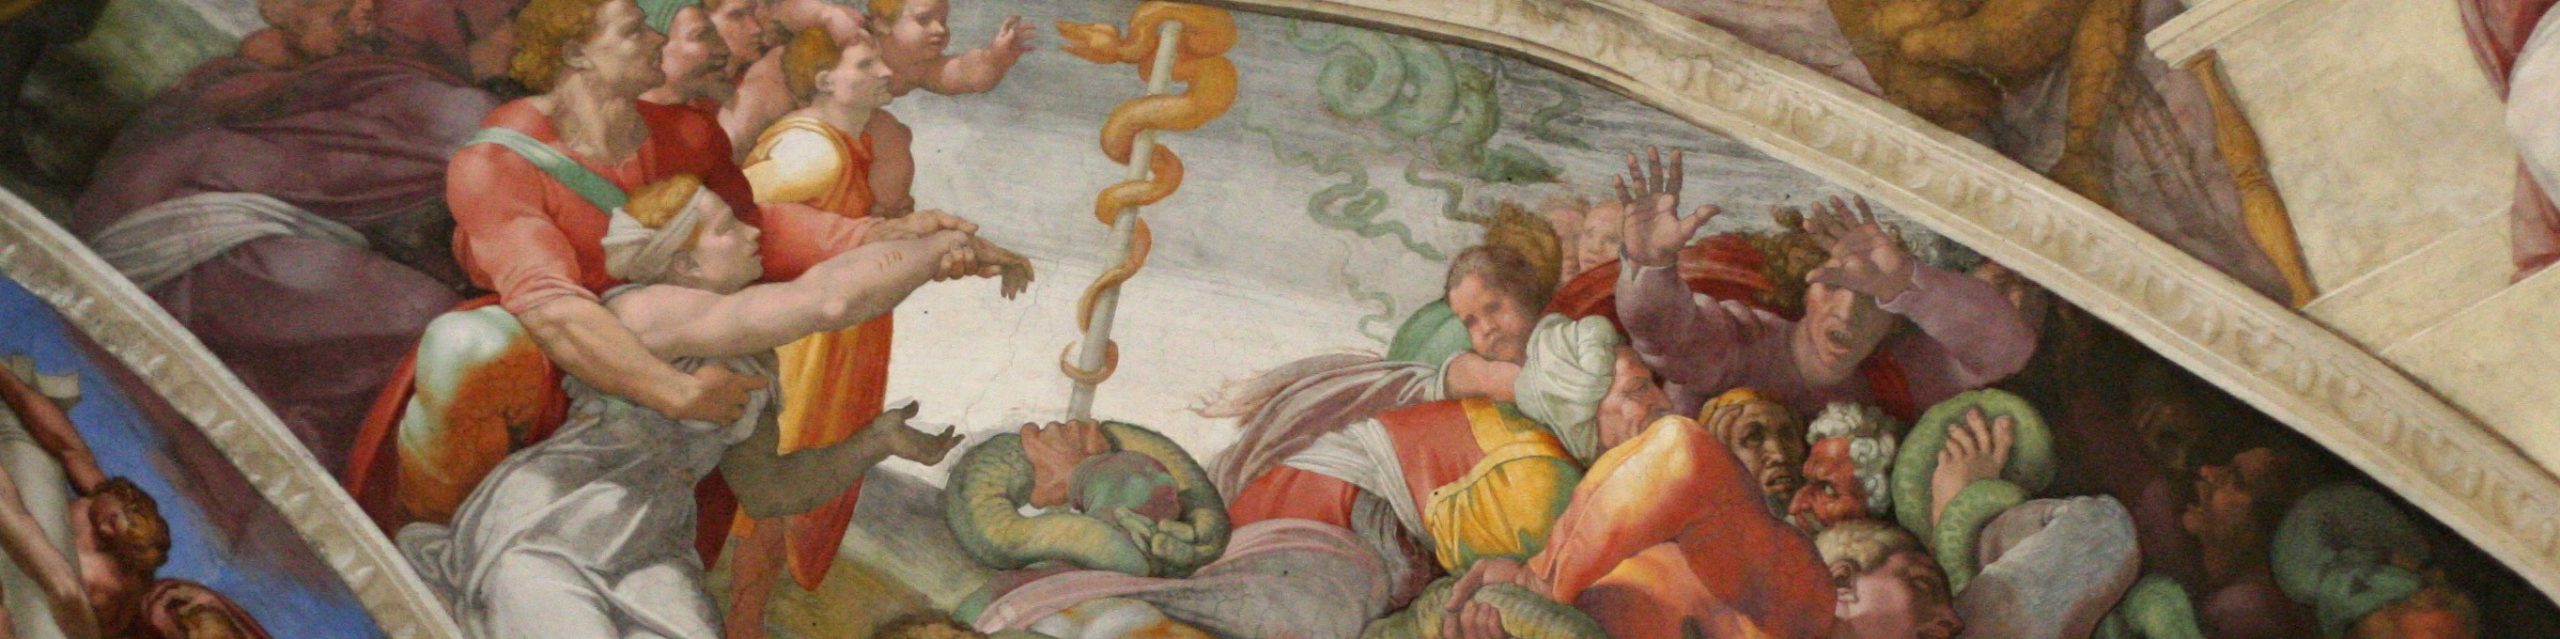 Erección de la serpiente de bronce. De Miguel Ángel. En la Capilla Sixtina, pintada entre 1508-1512.